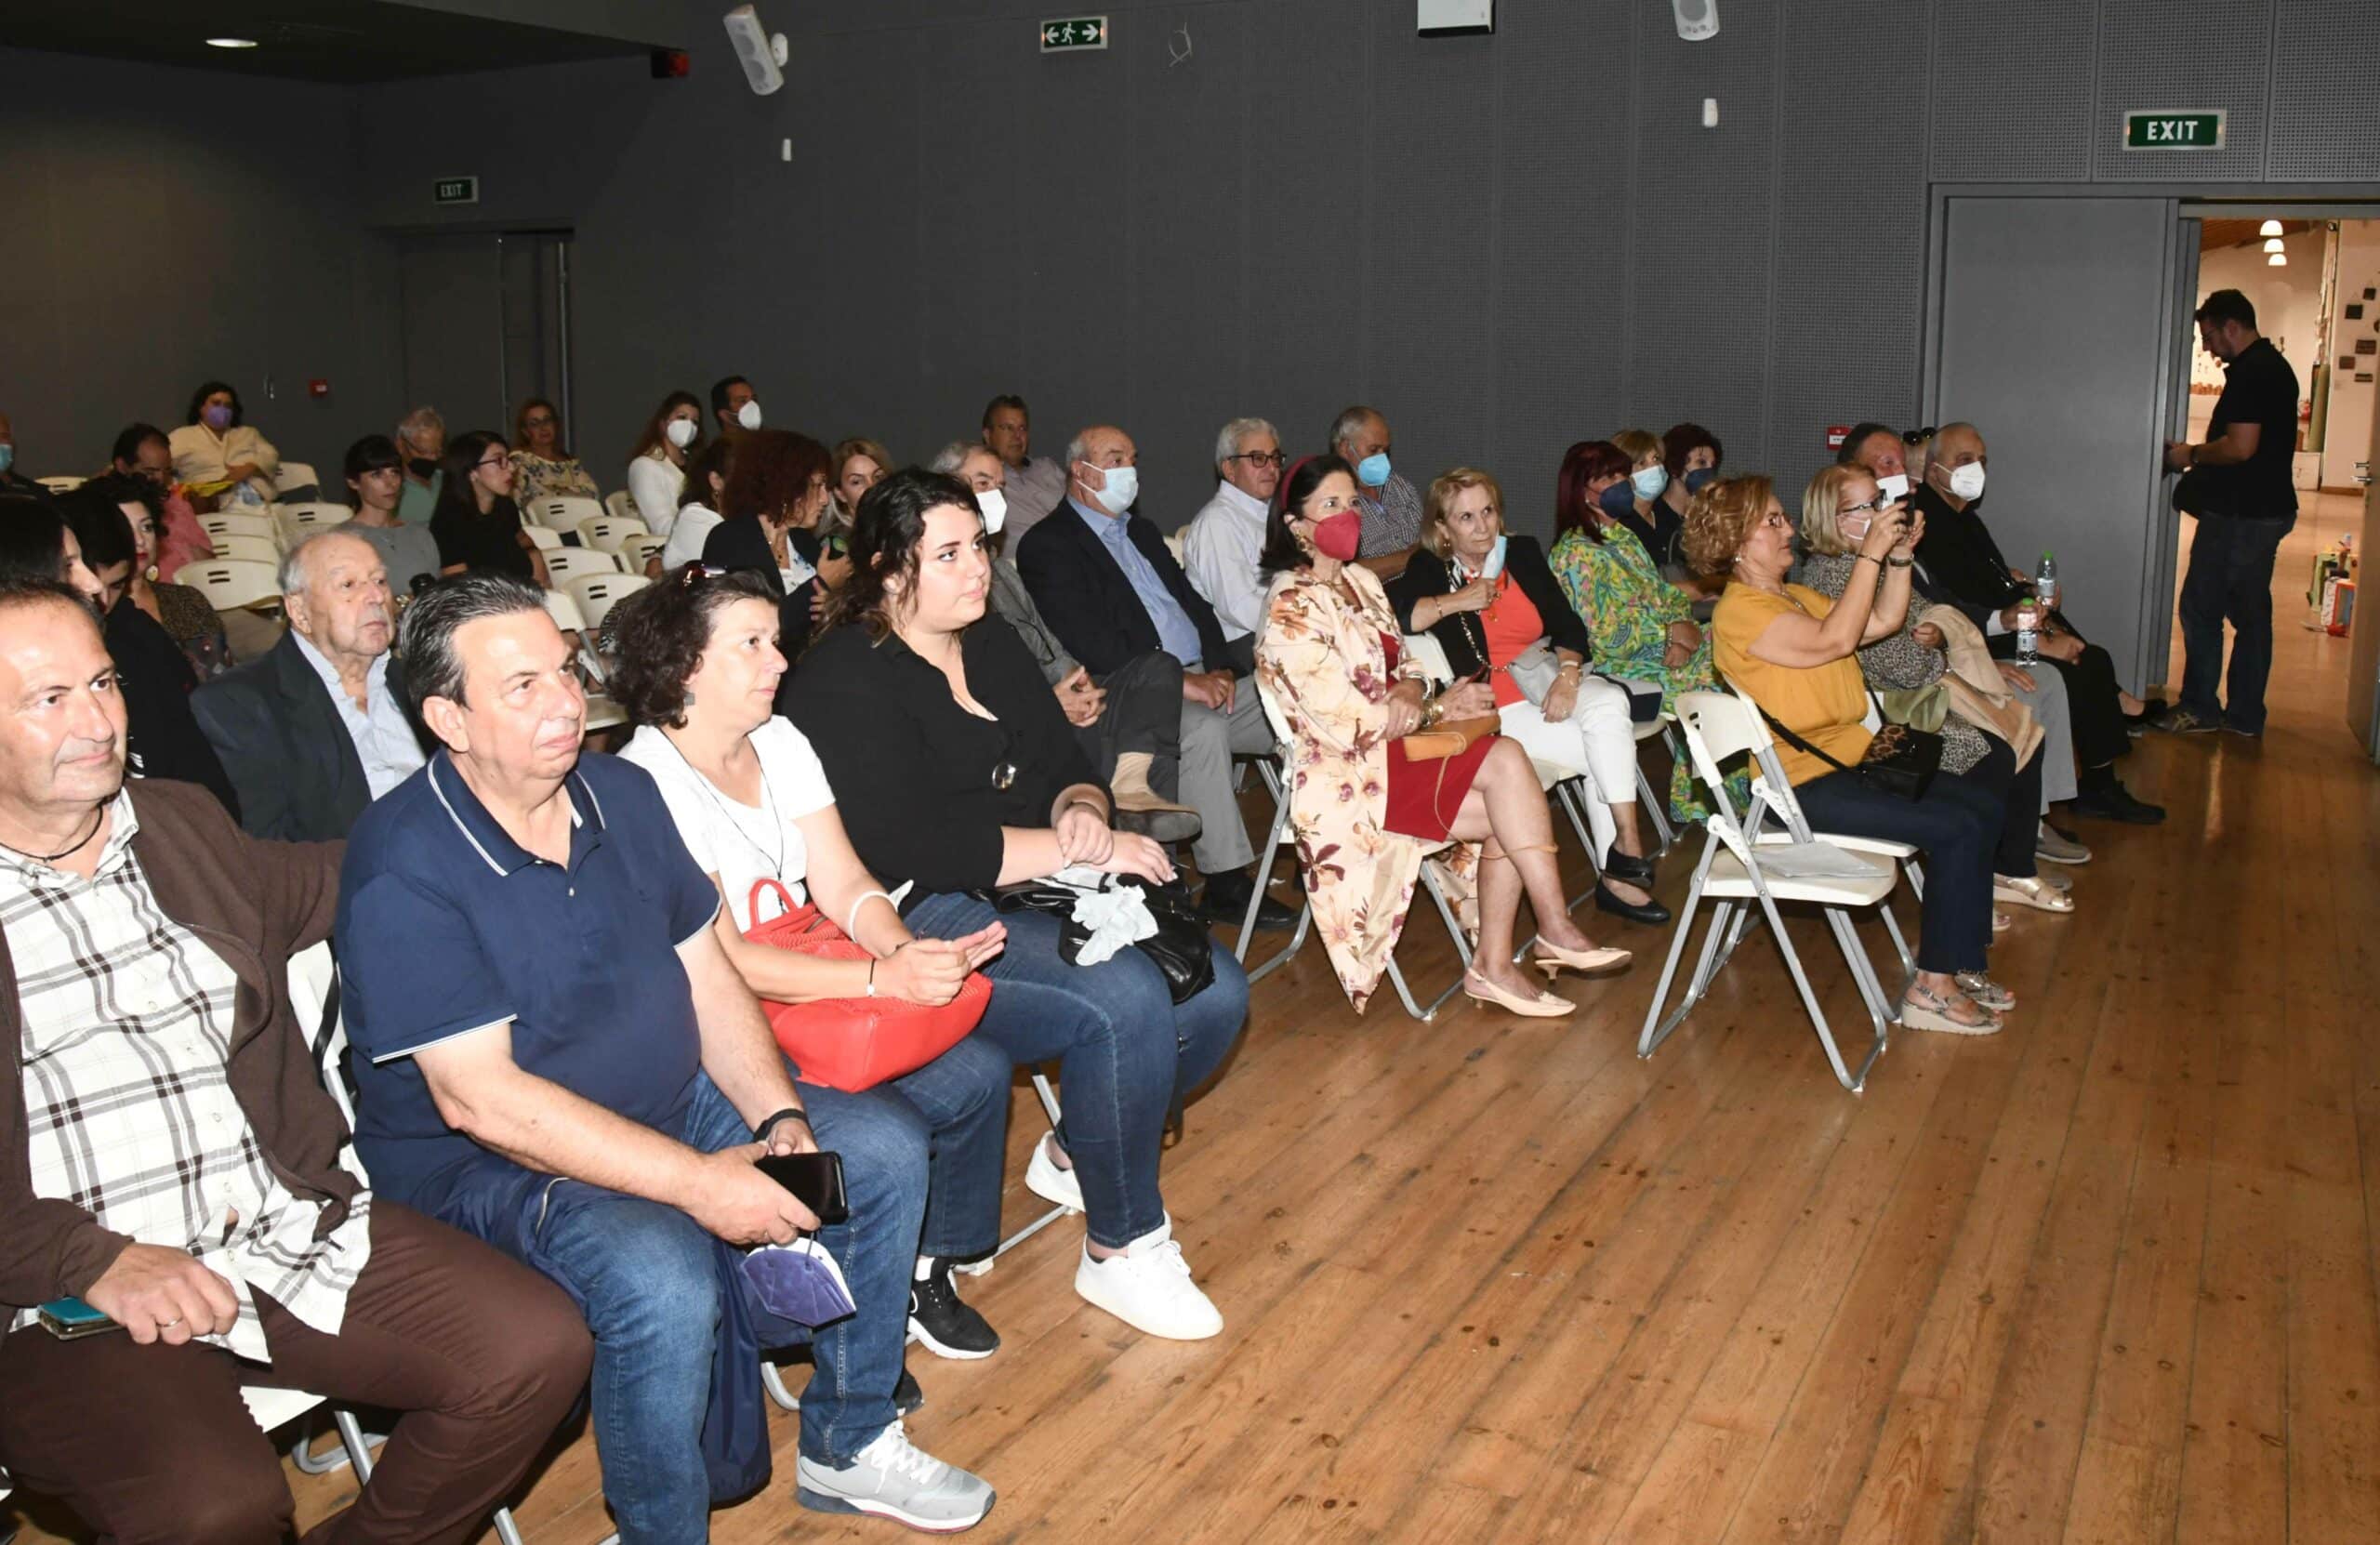 Ο Πολιτιστικός Οργανισμός στην εκδήλωση των Κρητών για τον Ν. Καζαντζάκη